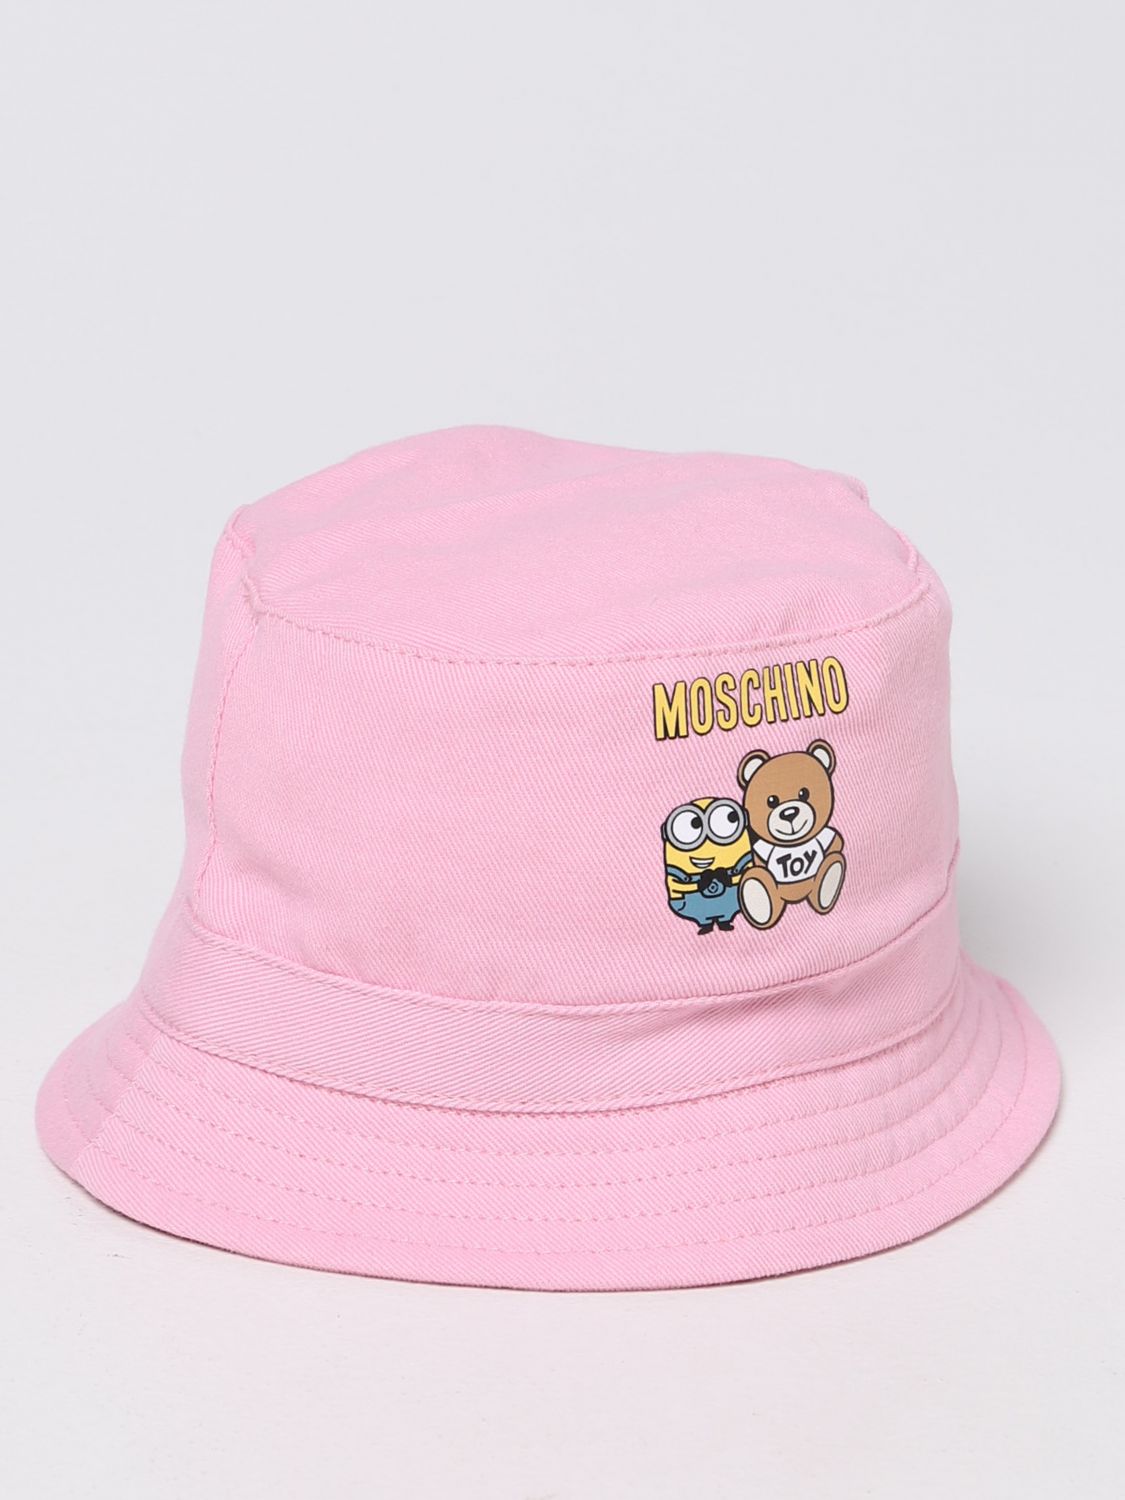 帽子 モスキーノ: 帽子 Moschino Baby キッズ ピンク 1